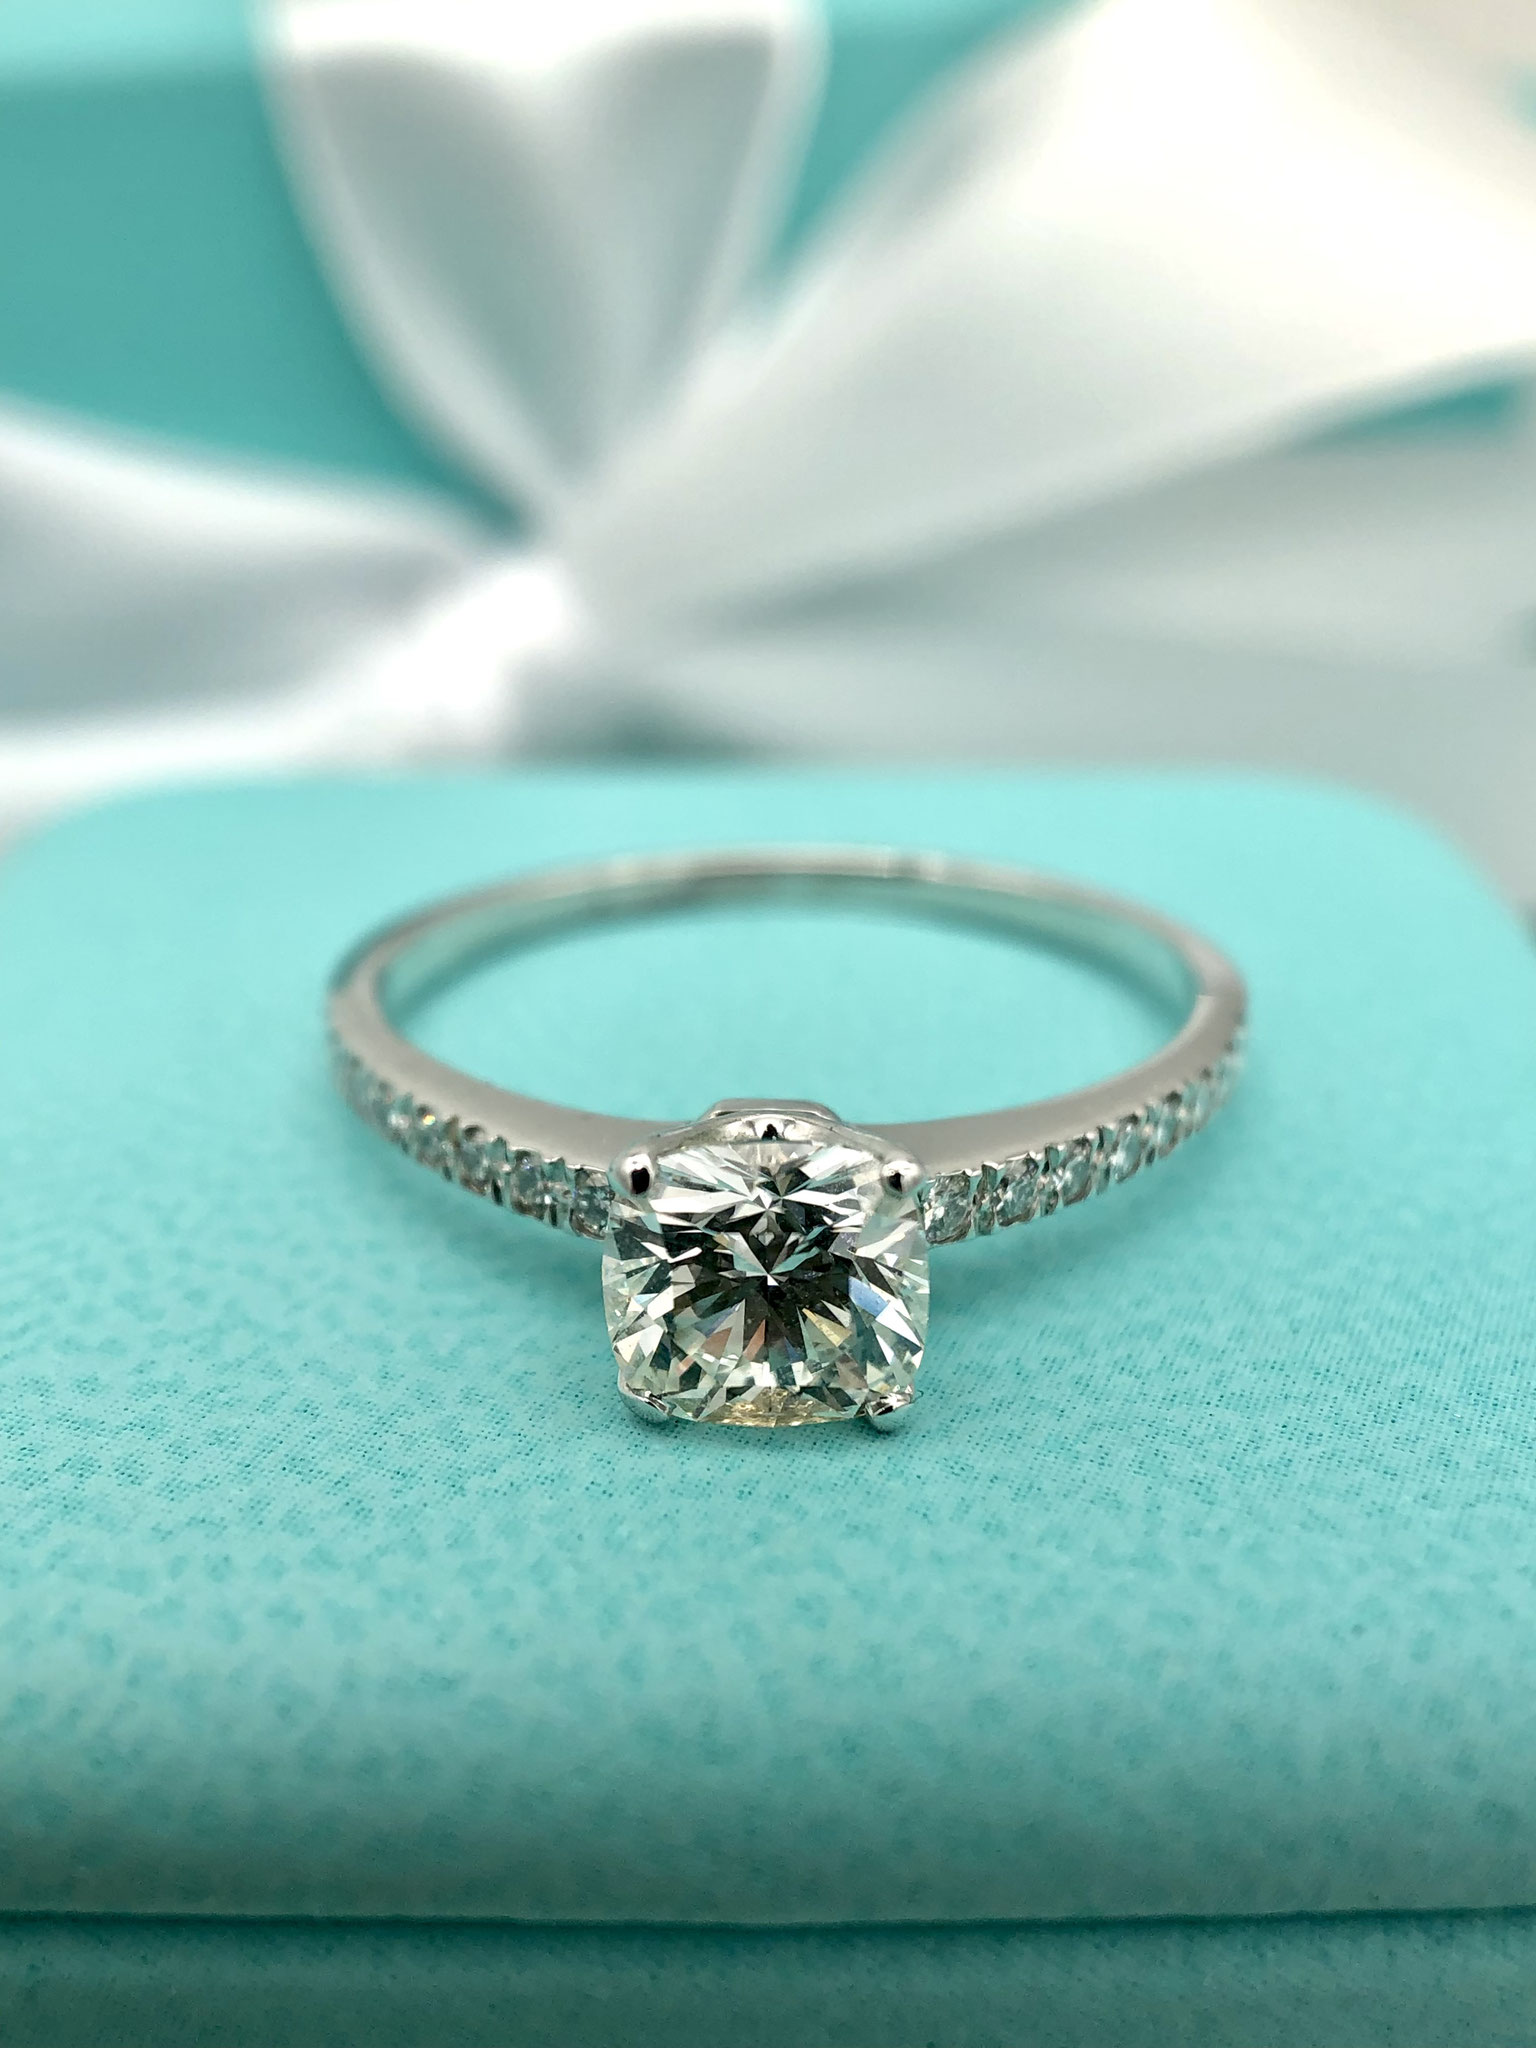 Tiffany&Co. Novo / Jubel Ring